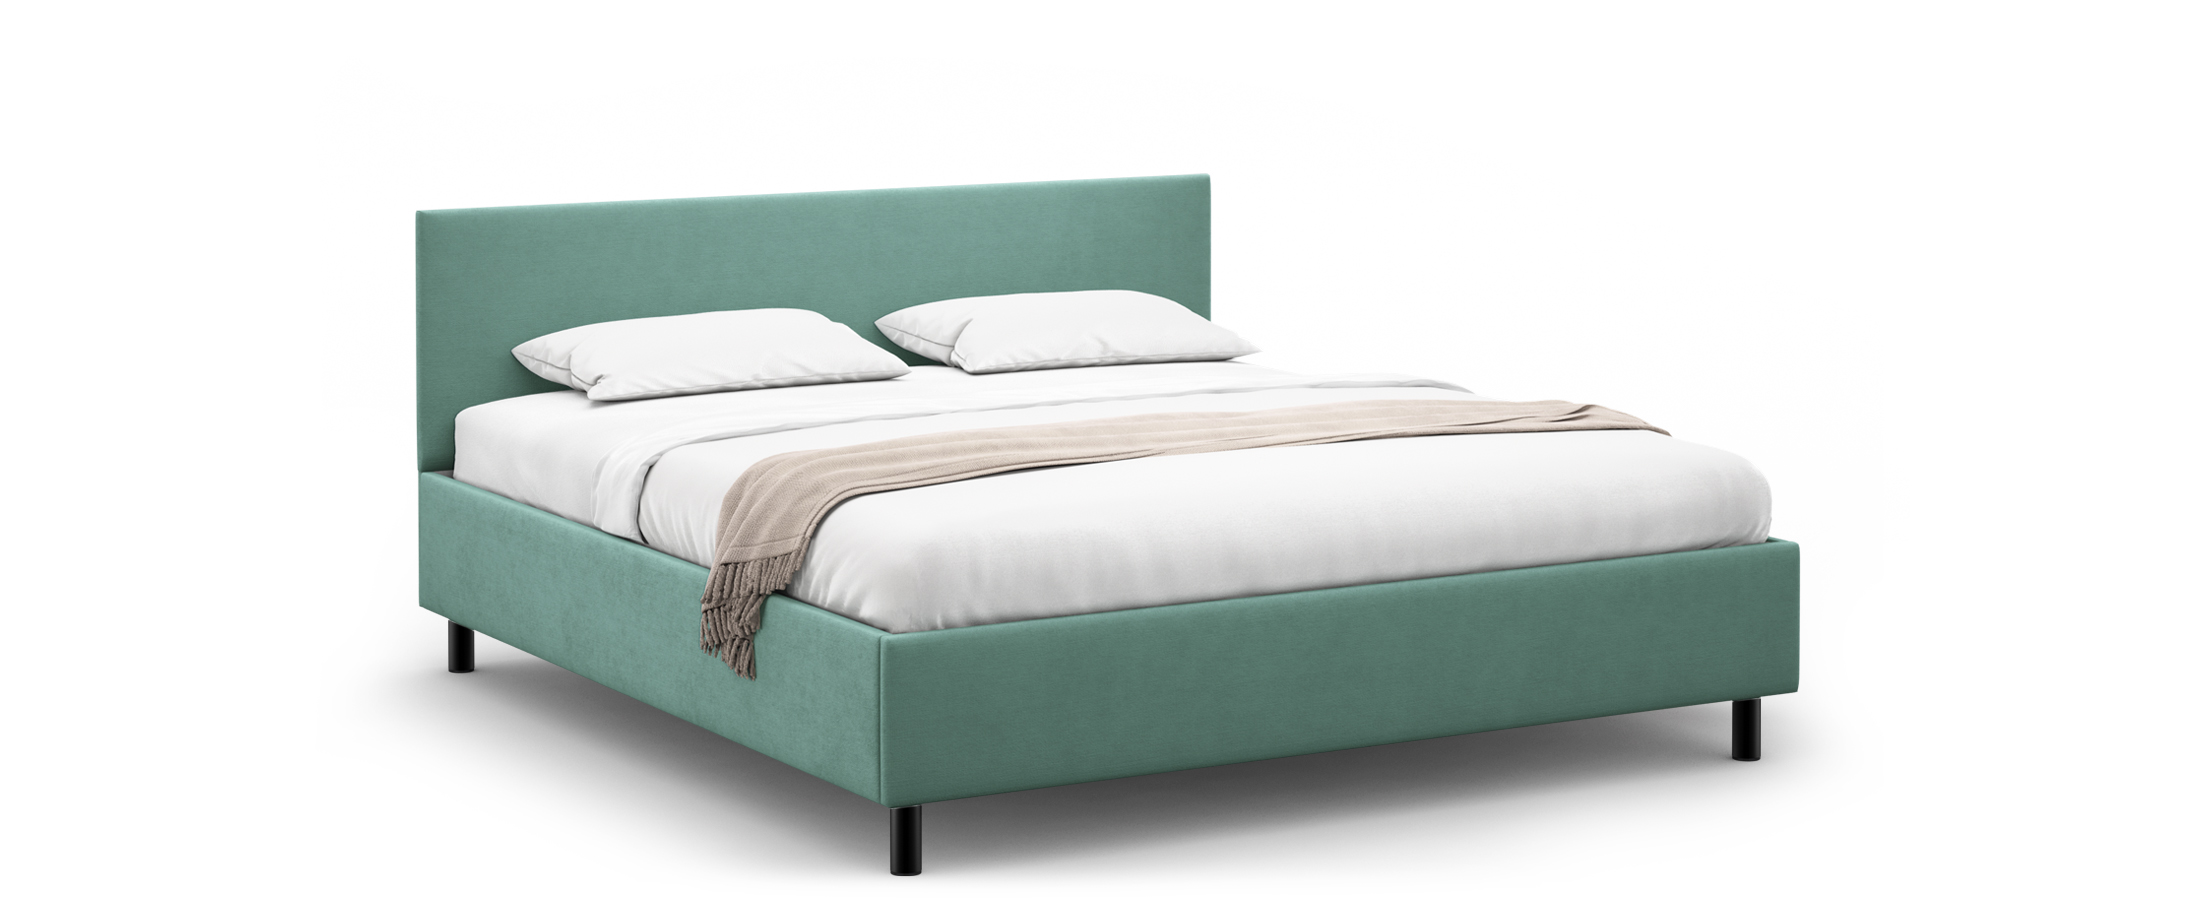 Кровать двуспальная Nova New 180х200 Модель 1230